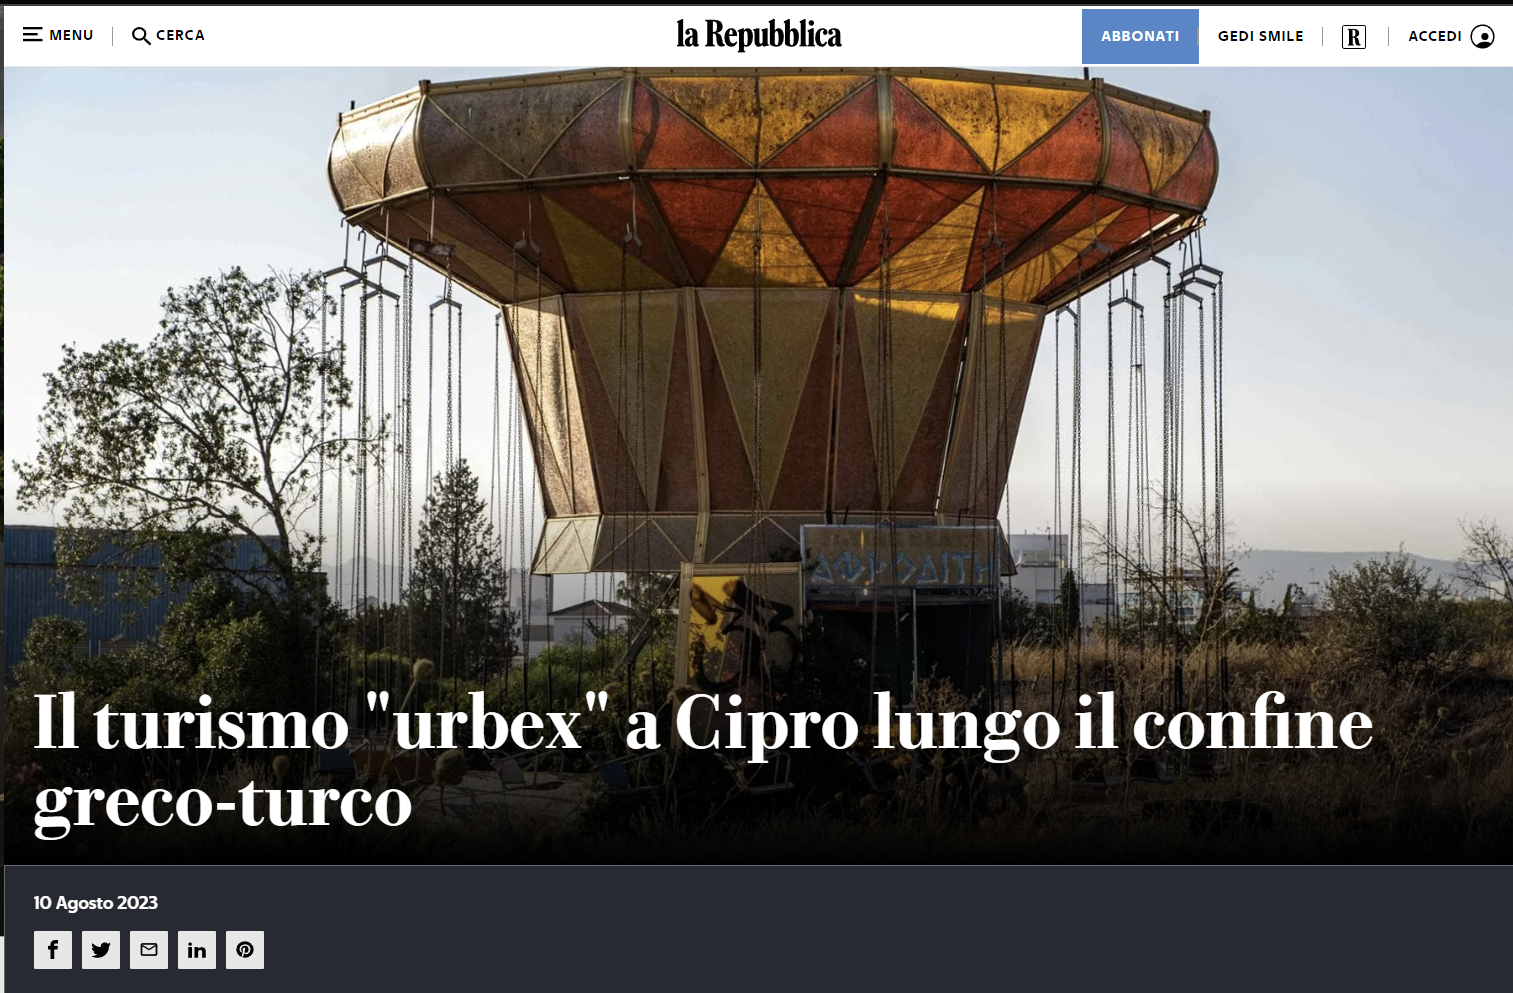 Το νέο επεισόδιο της τουρκικής εισβολής και κατοχής! Η ιταλική “La Repubblica” διαφημίζει διακοπές στη νεκρή ζώνη στην Κύπρο